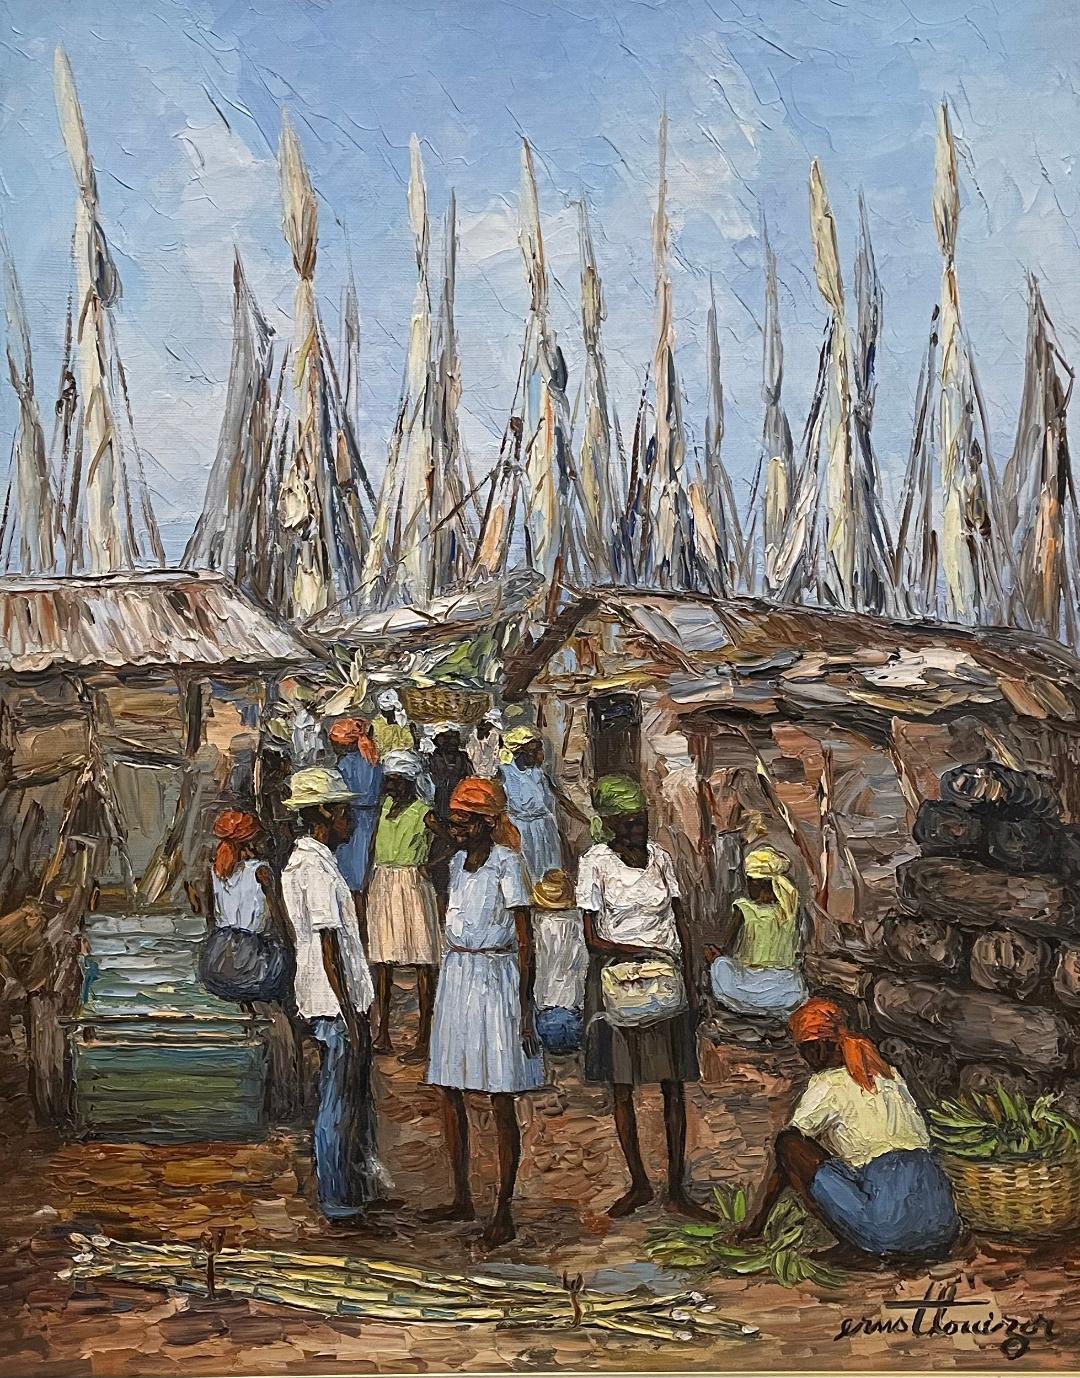 Ernst Louizor (Haitian, 1938-2011) 20"x16" Market Scene 1983 Oil on Canvas Painting #8-3-96MFN